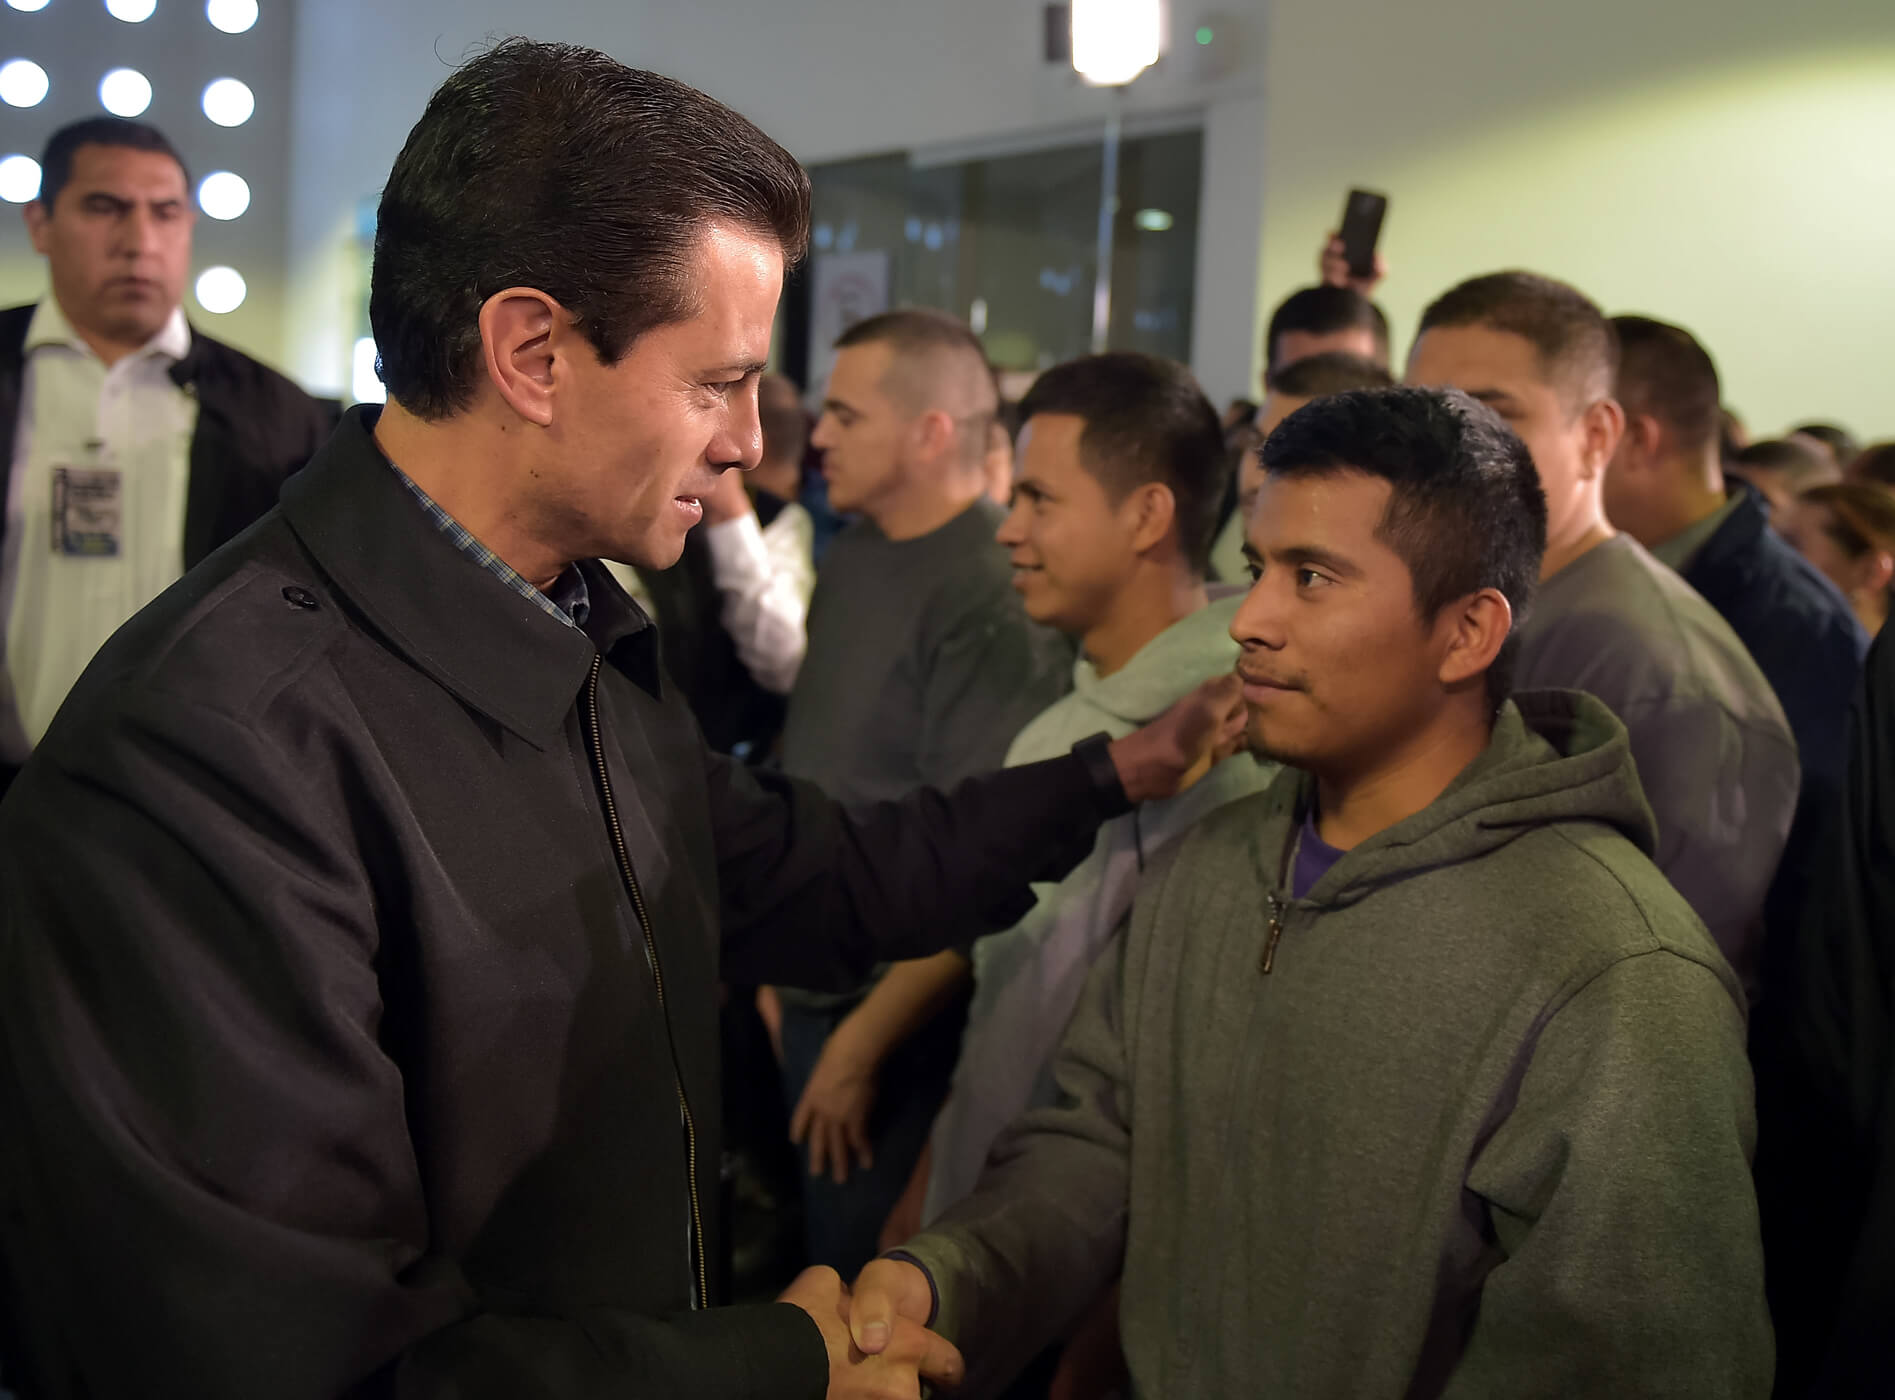 El presidente Enrique Peña Nieto se reunió en privado con los migrantes en el aeropuerto. (Notimex)